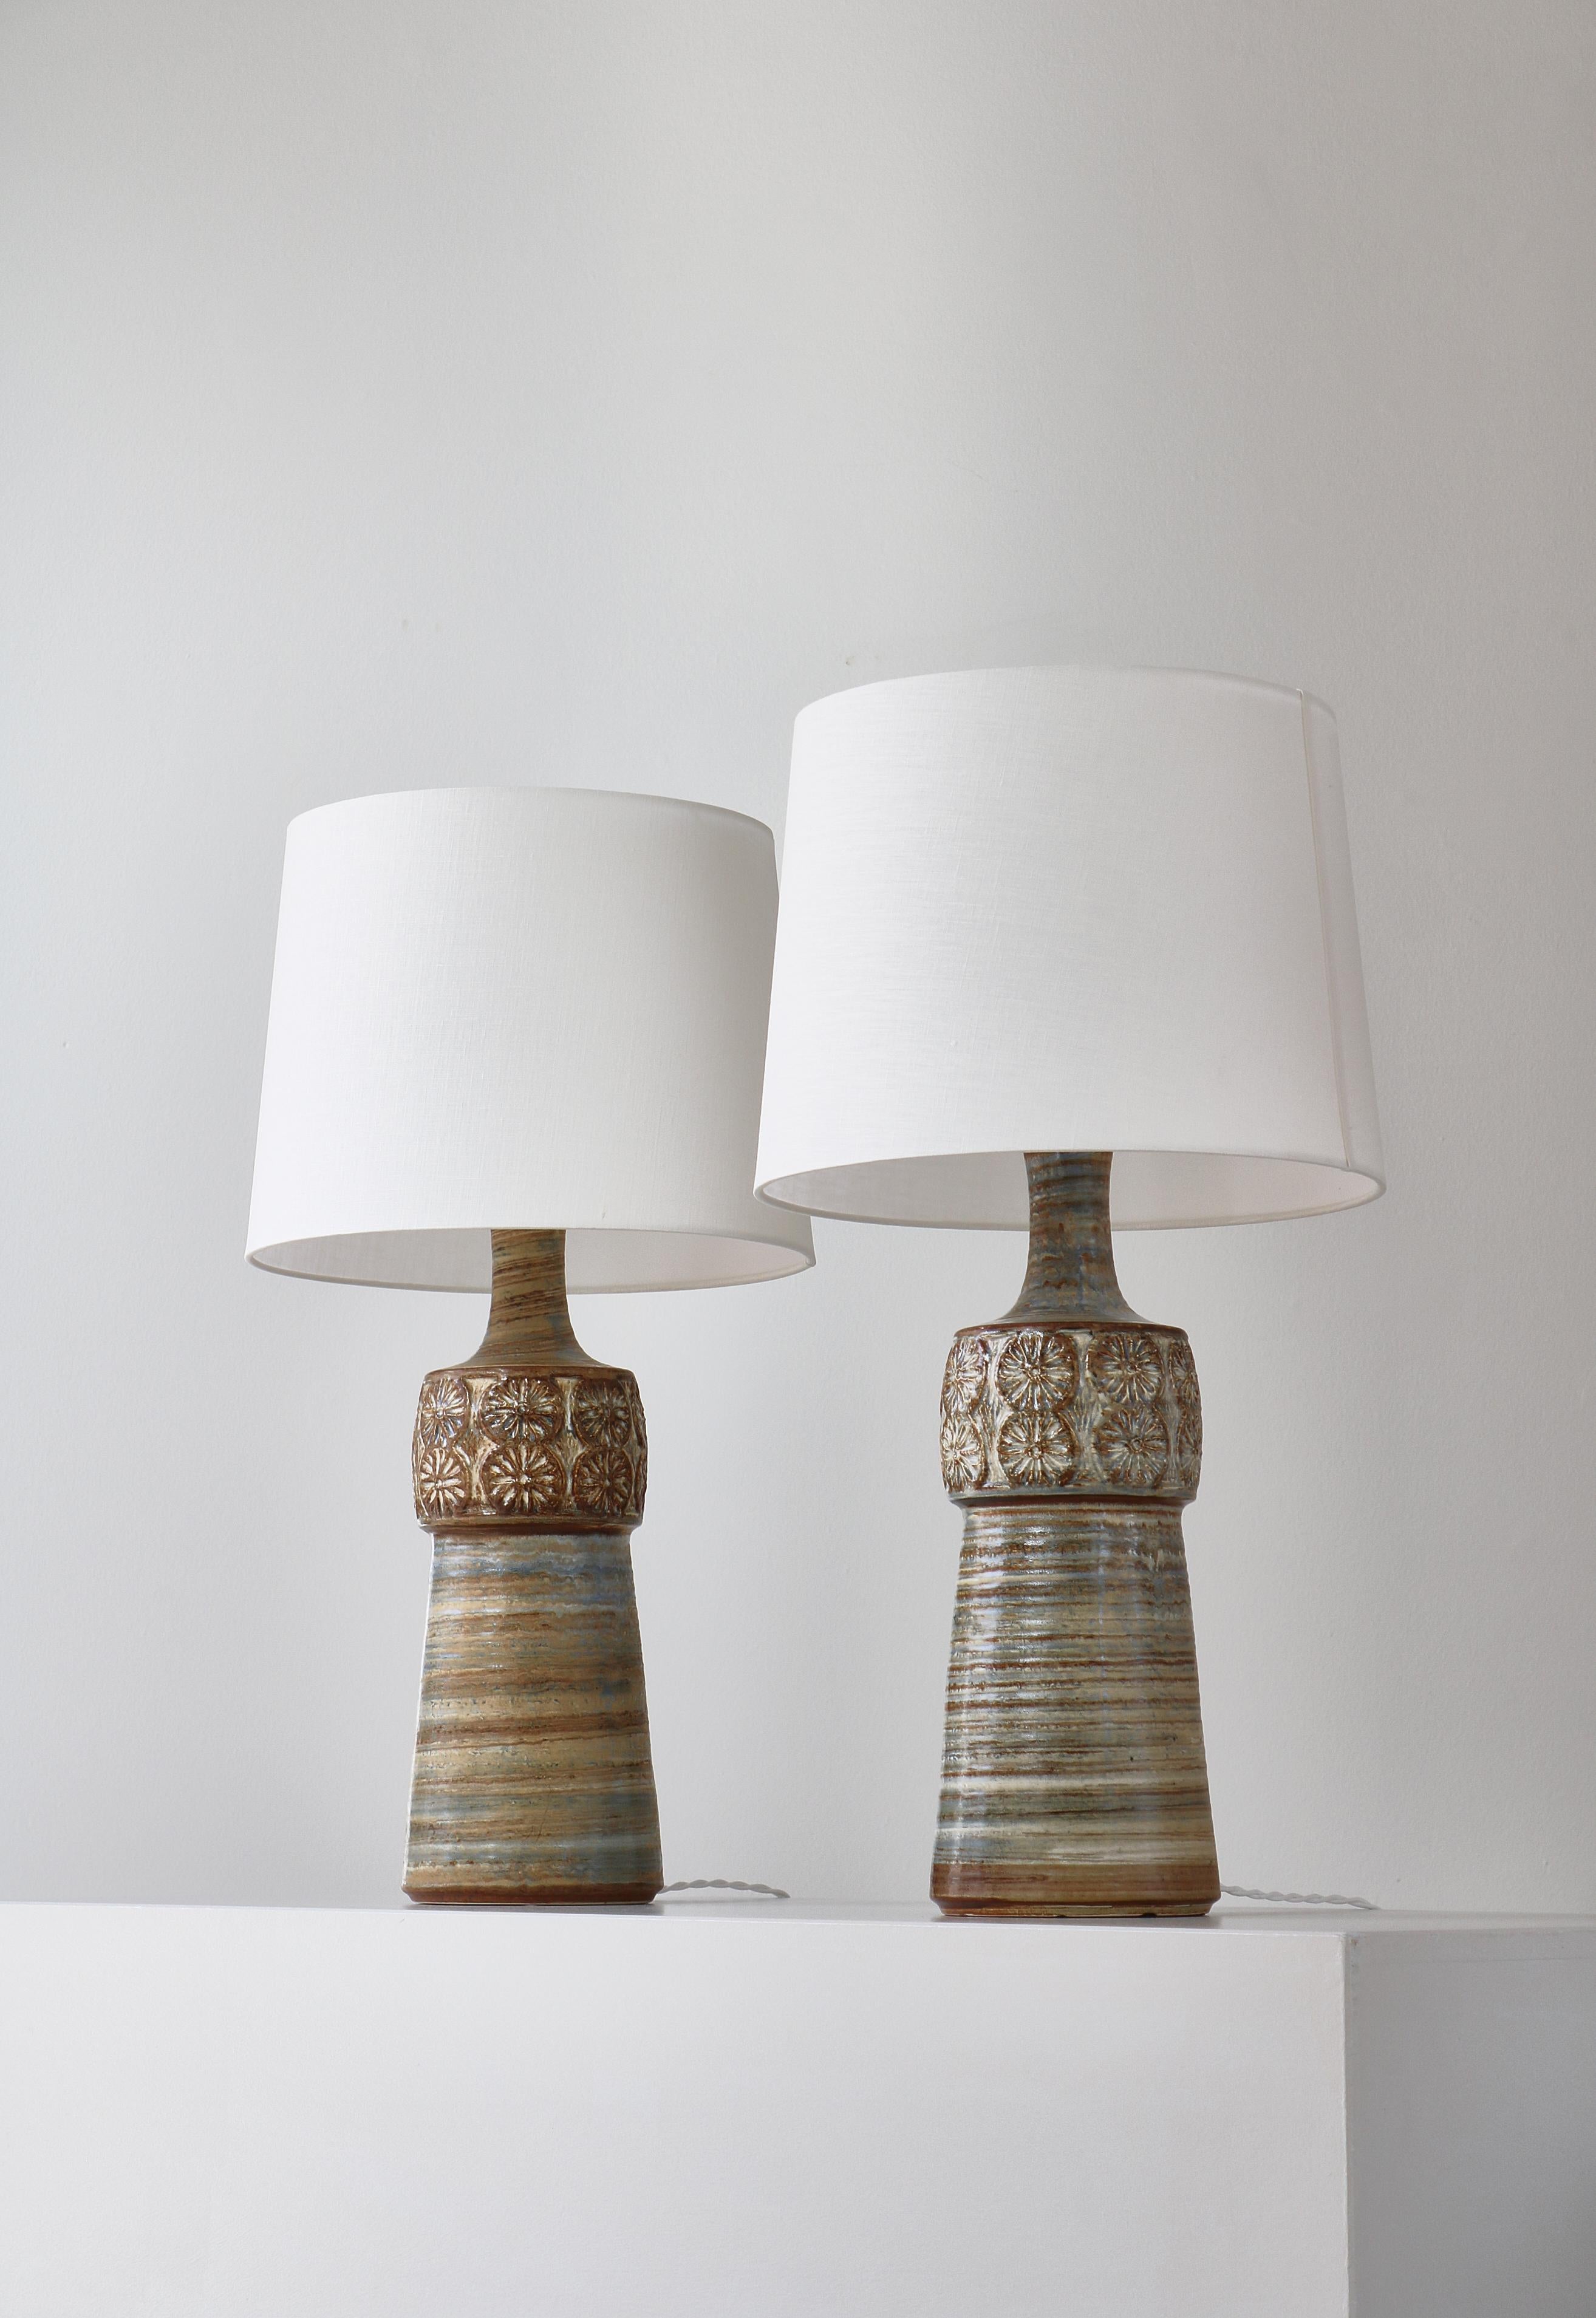 Wunderschönes Paar großer, handgefertigter Steingut-Tischlampen, hergestellt in Dänemark in den 1960er Jahren in der Søholm-Steingutwerkstatt auf Bornholm. Ausgestattet mit hellen Schirmen aus Leinen.

Søholm Stentøj (Steinzeug) ist einer der